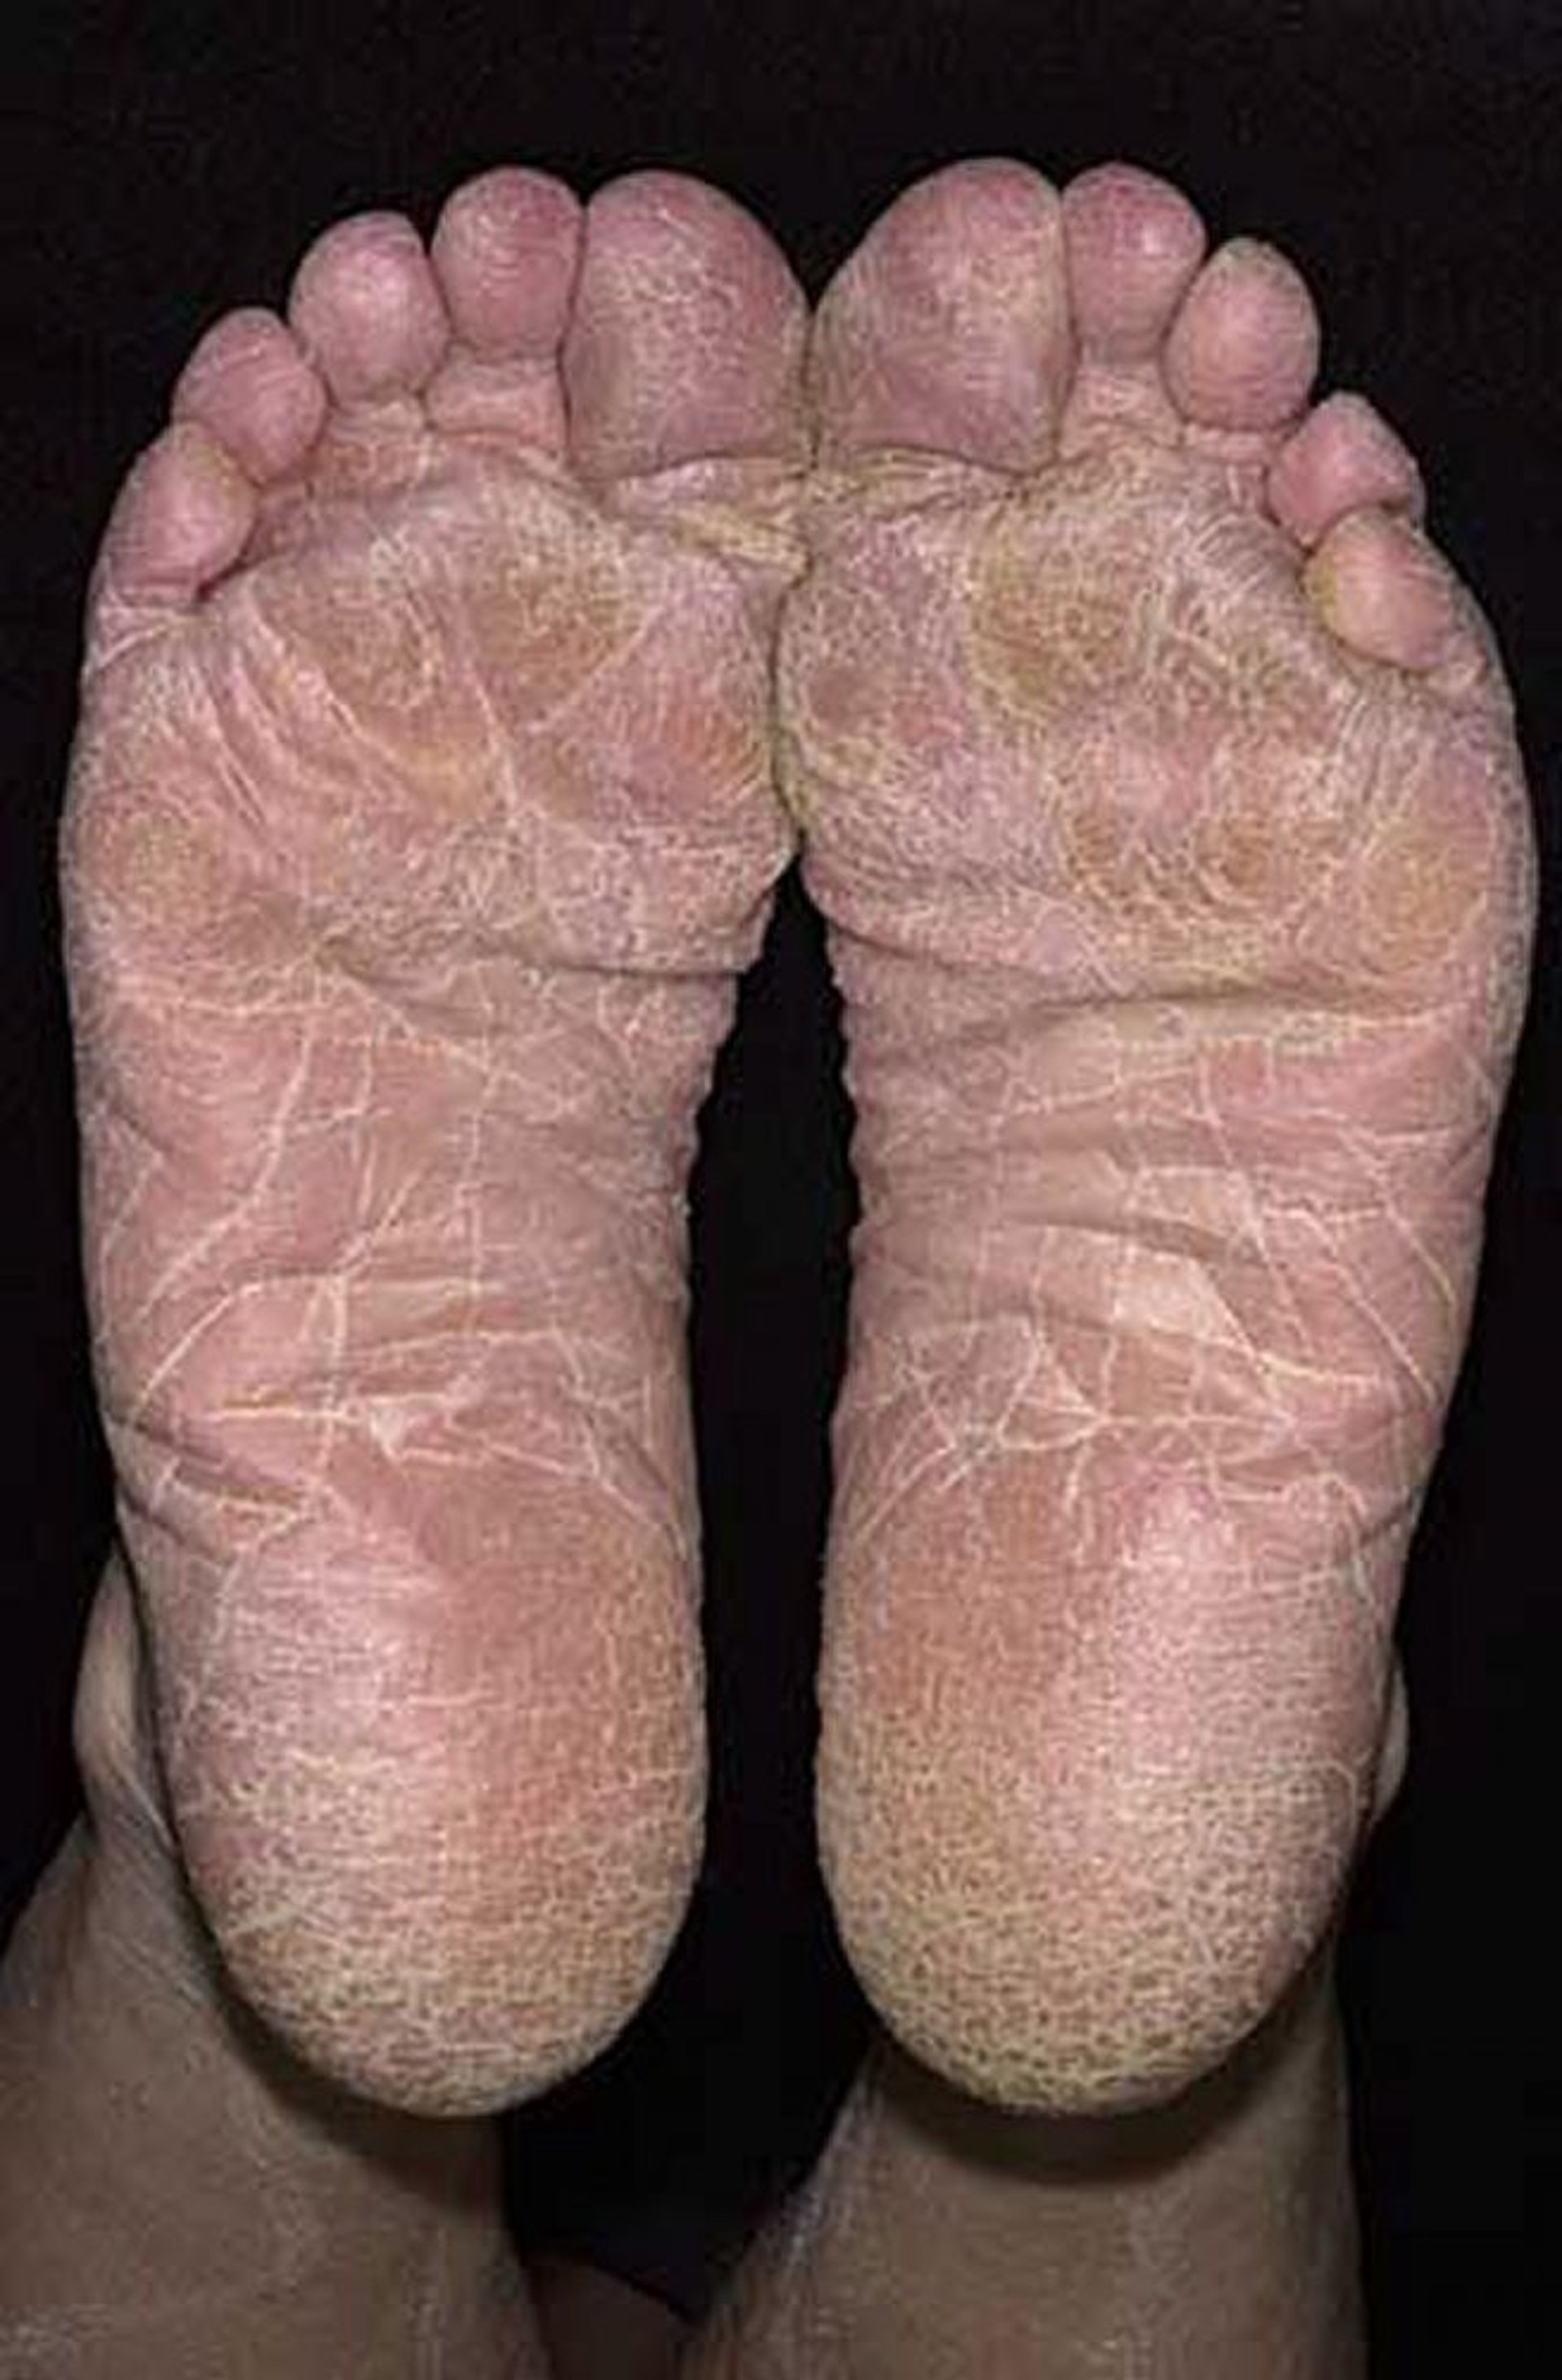 Abschuppung der gesamten Fußsohle bei Fußpilz (Tinea pedis)